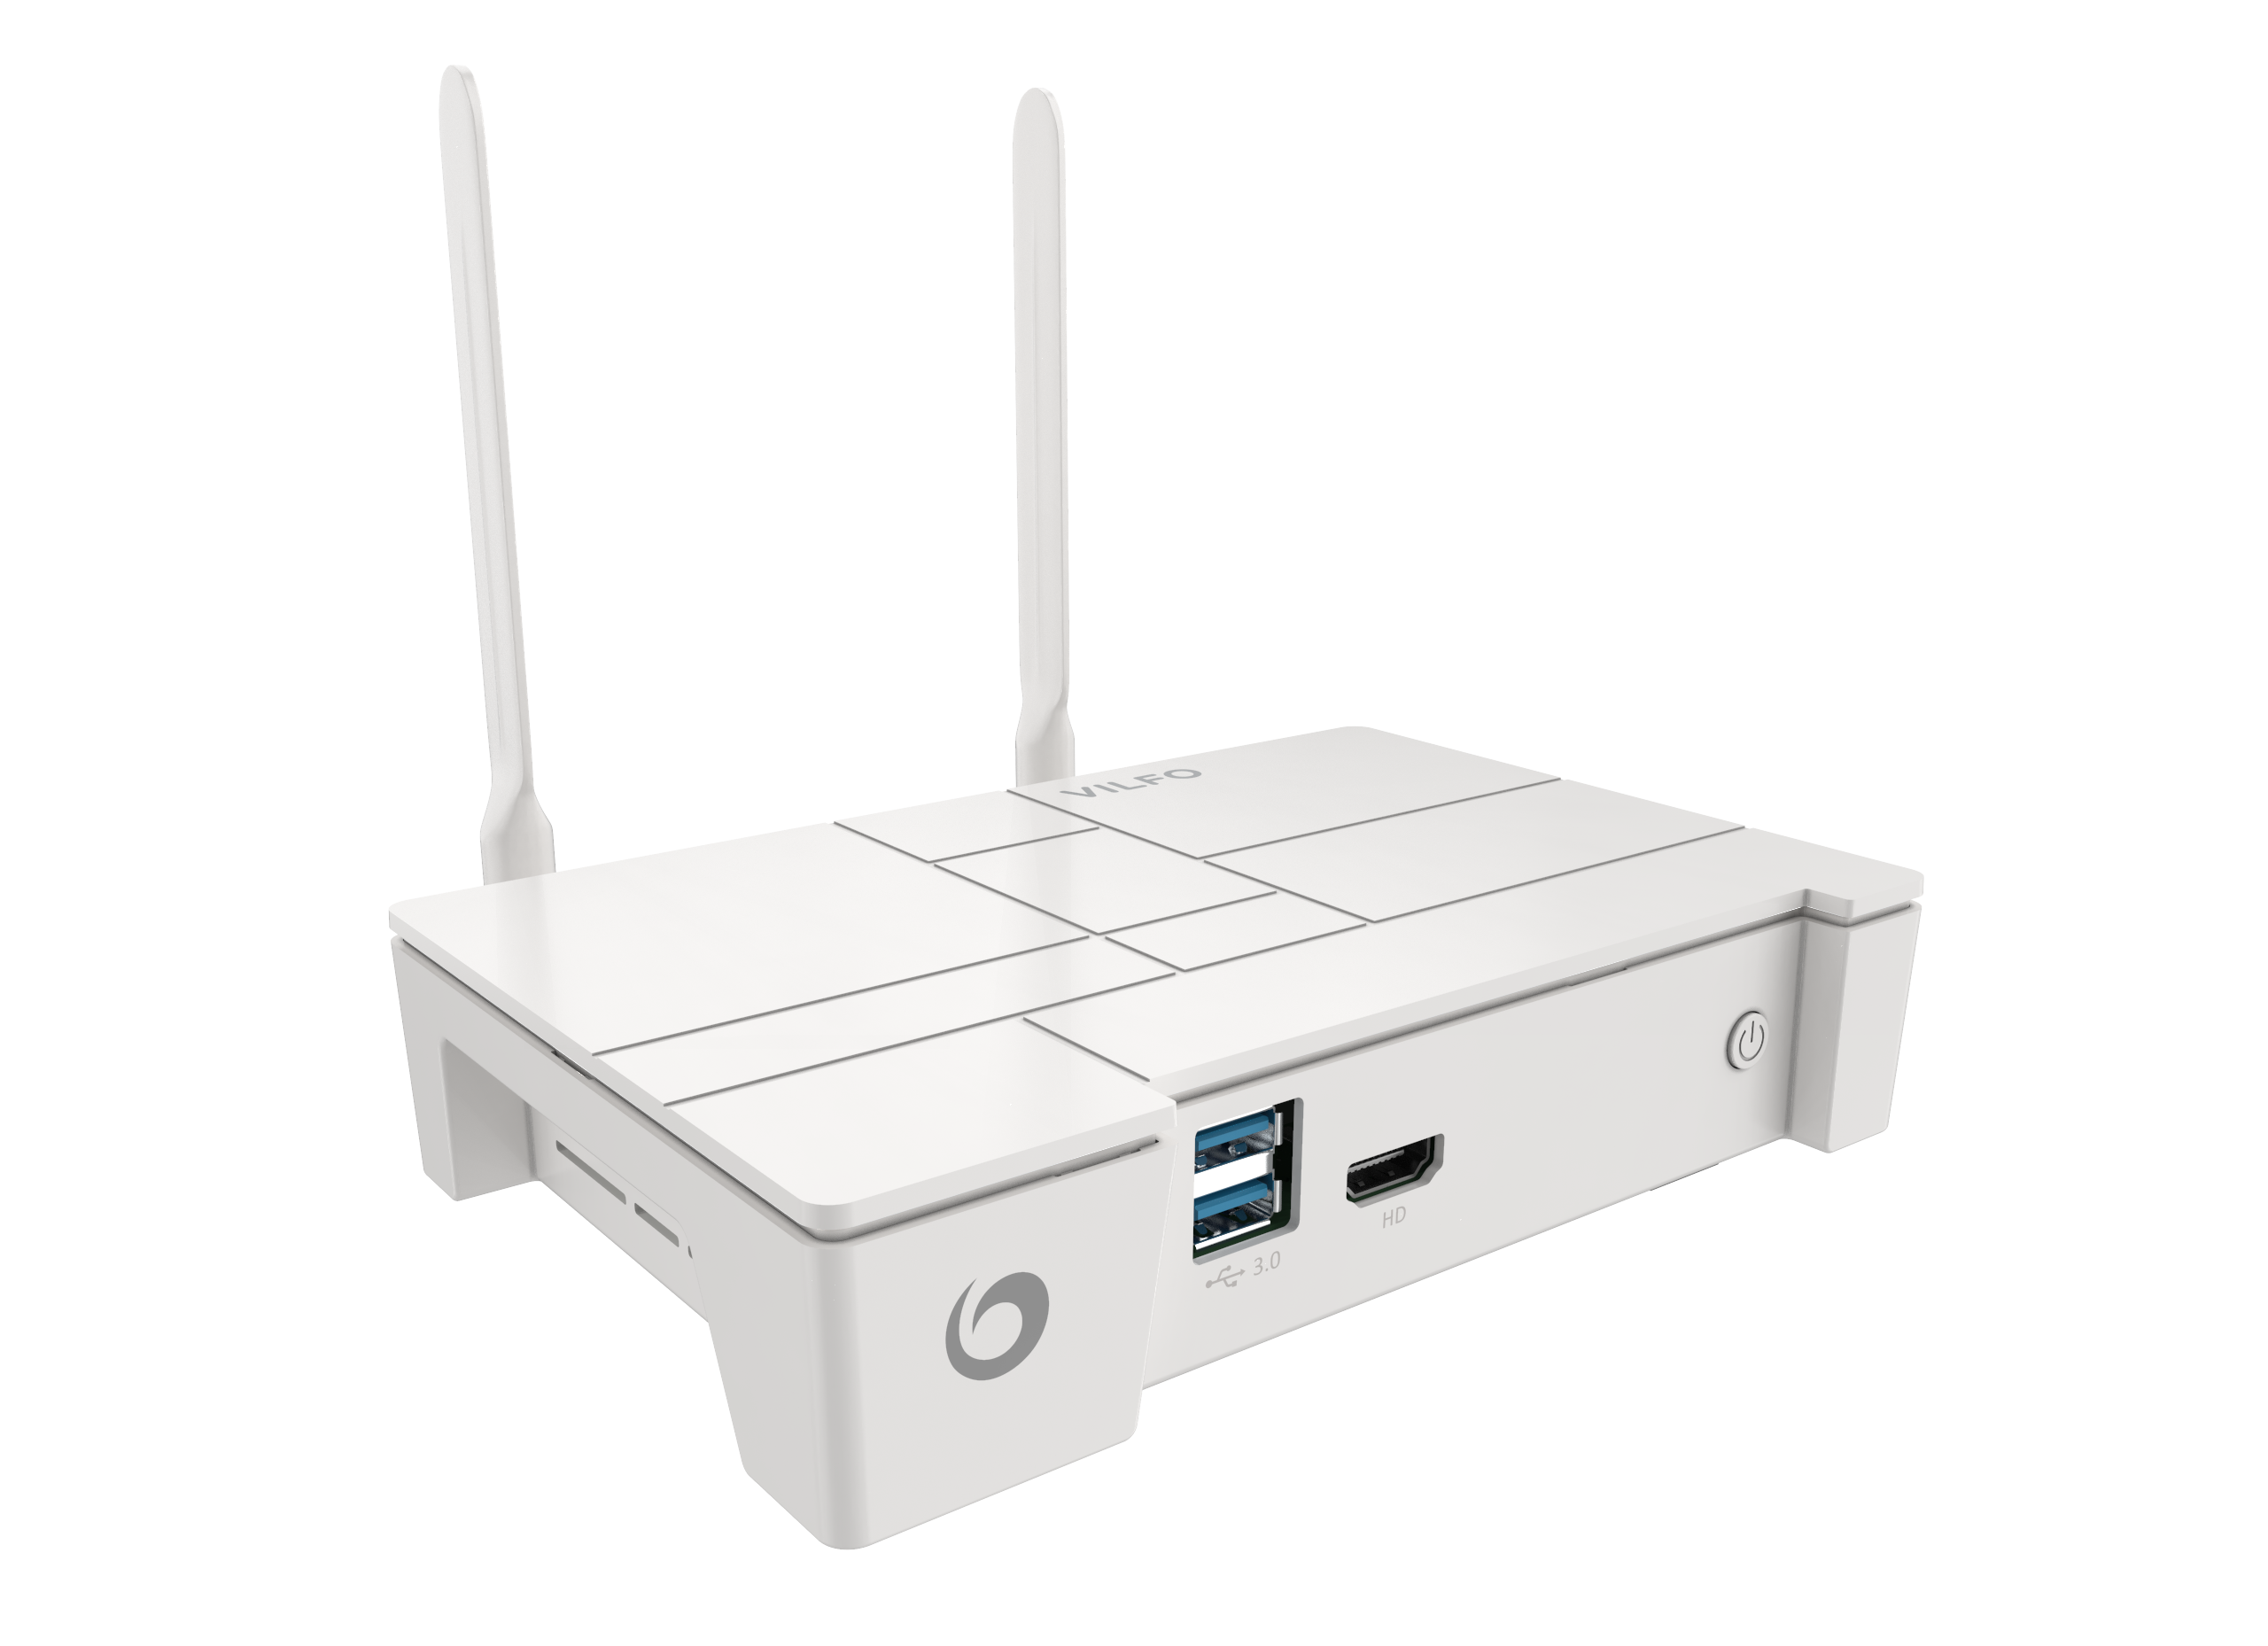 Abbildung von einem Vilfo VPN Router